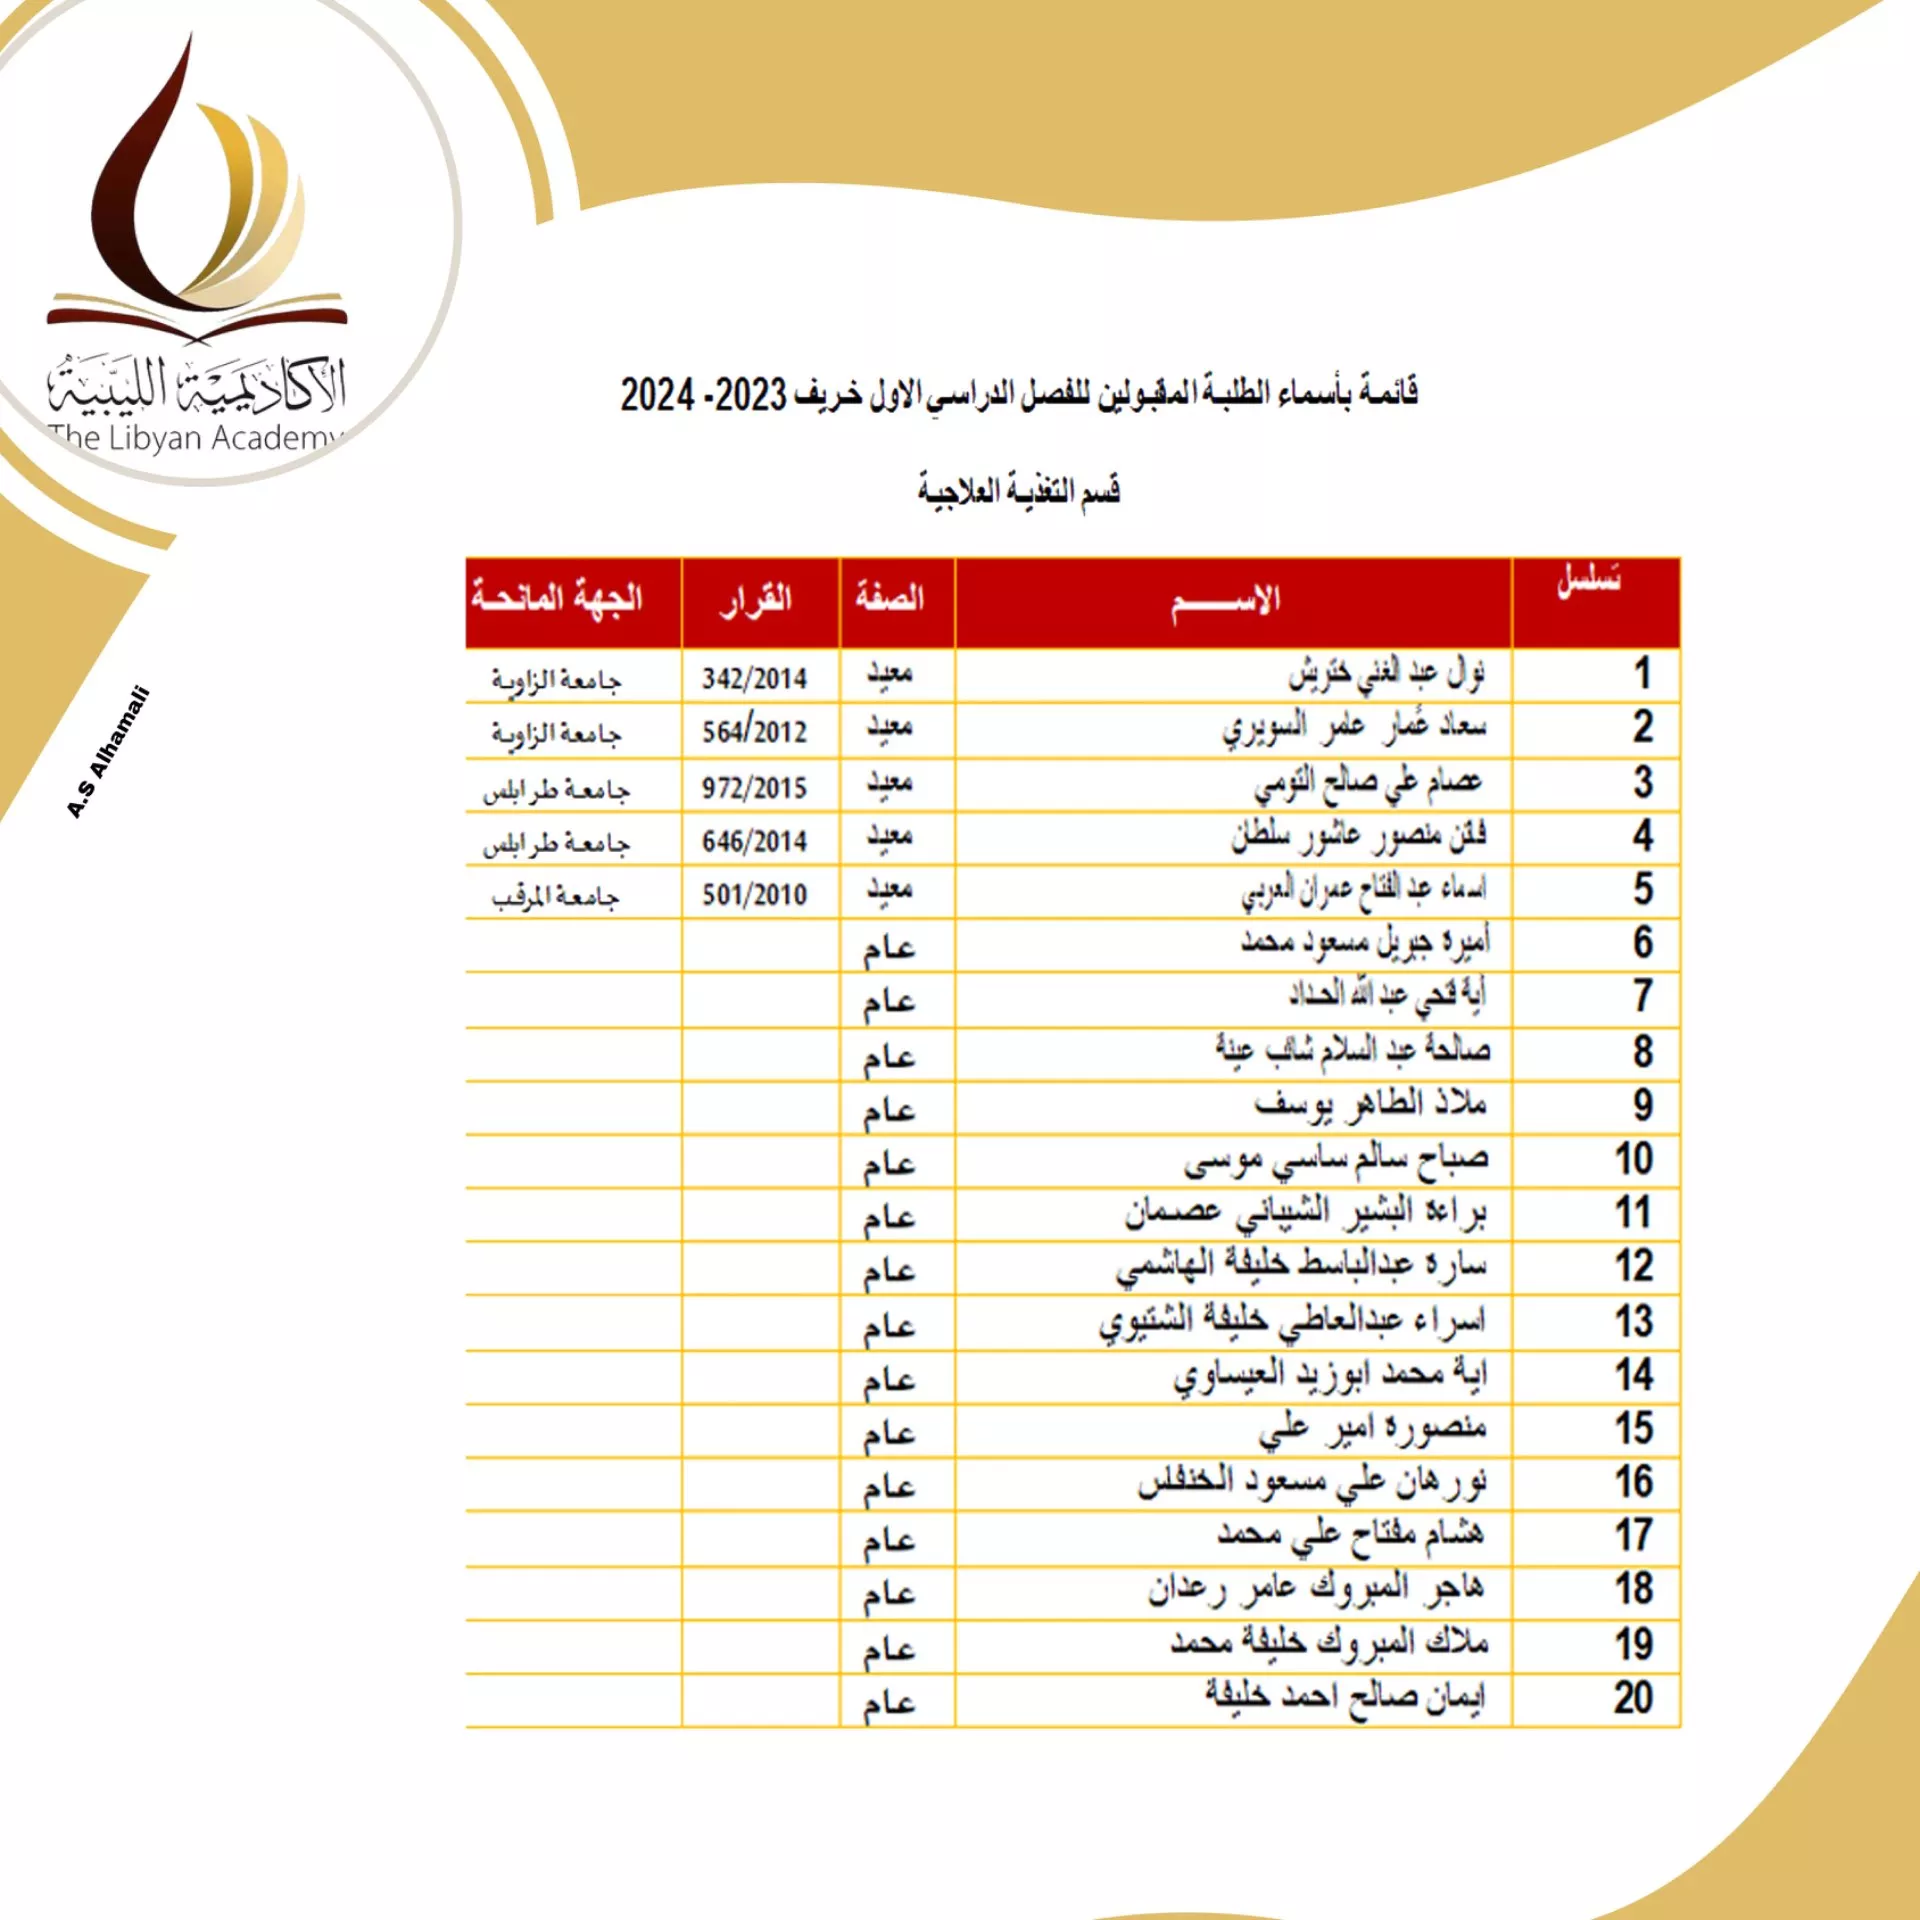 نتائج امتحانات المفاضلة للمتقدمين لدراسة الماجستير بالأكاديمية الليبية للدراسات العليا لمدرسة العلوم الطبية  للفصل الدراسي خريف 2023/ 2024